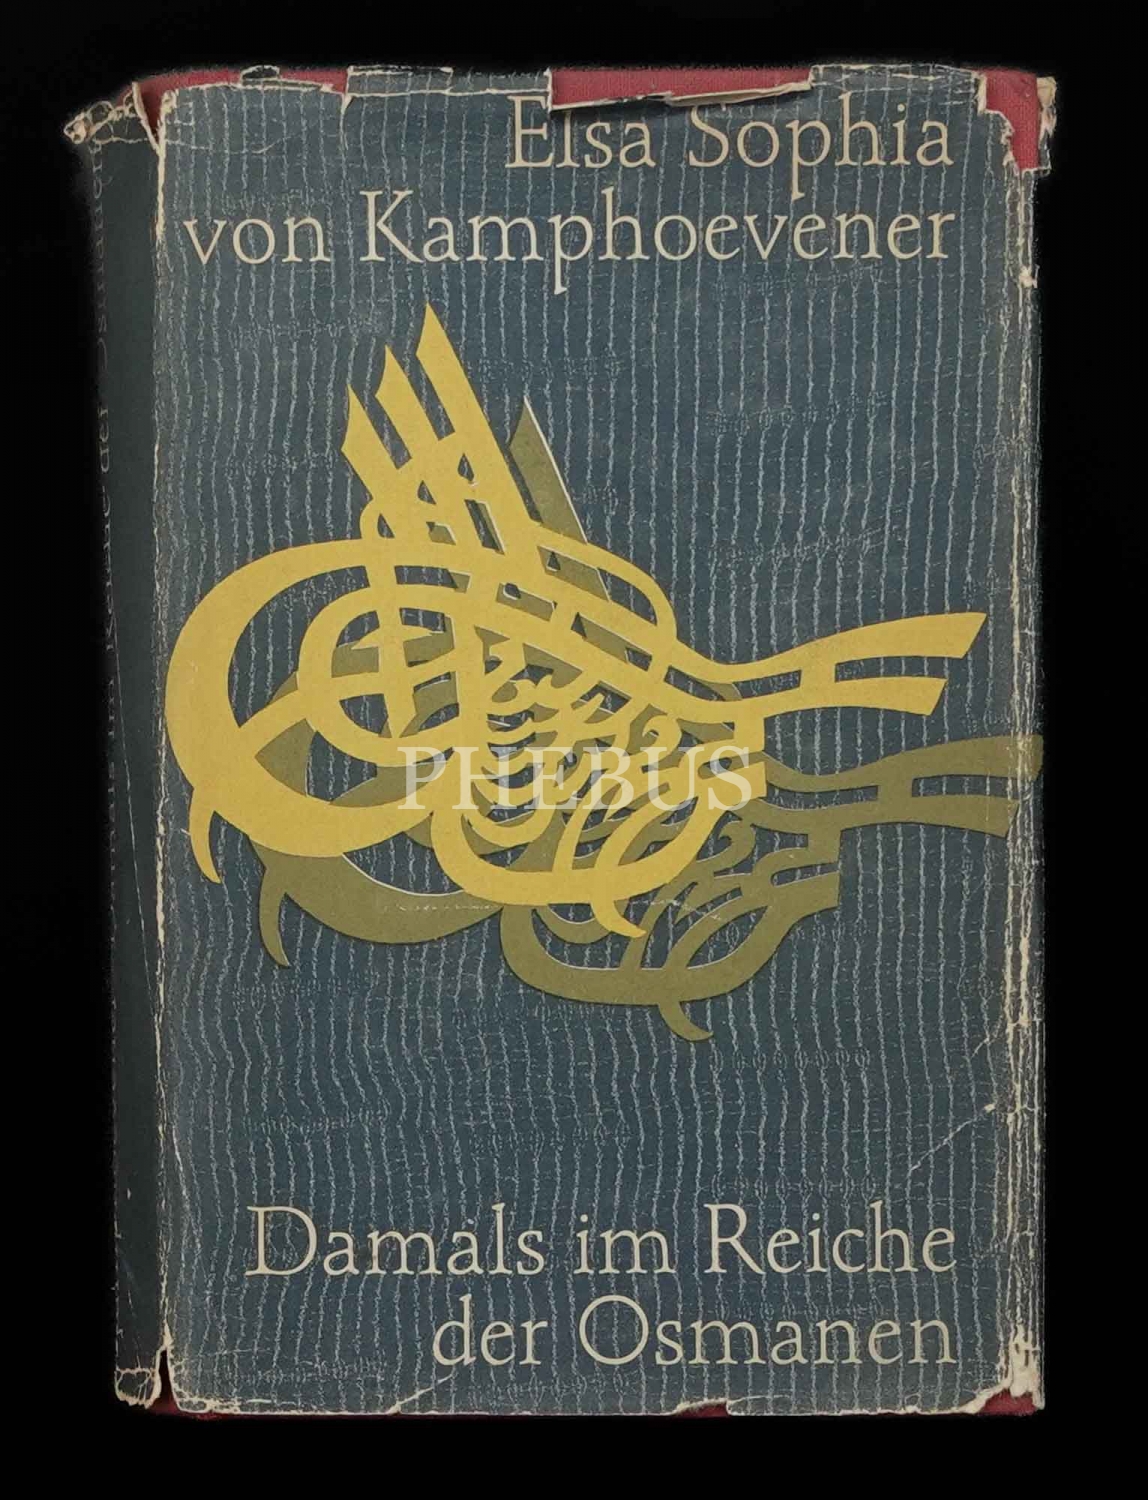 DAMALS IM REICHE DER OSMANEN (Ein Marchen der wirlichkeit aus der Türkie des Sultan Abdul Hamid), Elsa Sophia von Kamphoevener, 1959, 413 sayfa, 13x20 cm...